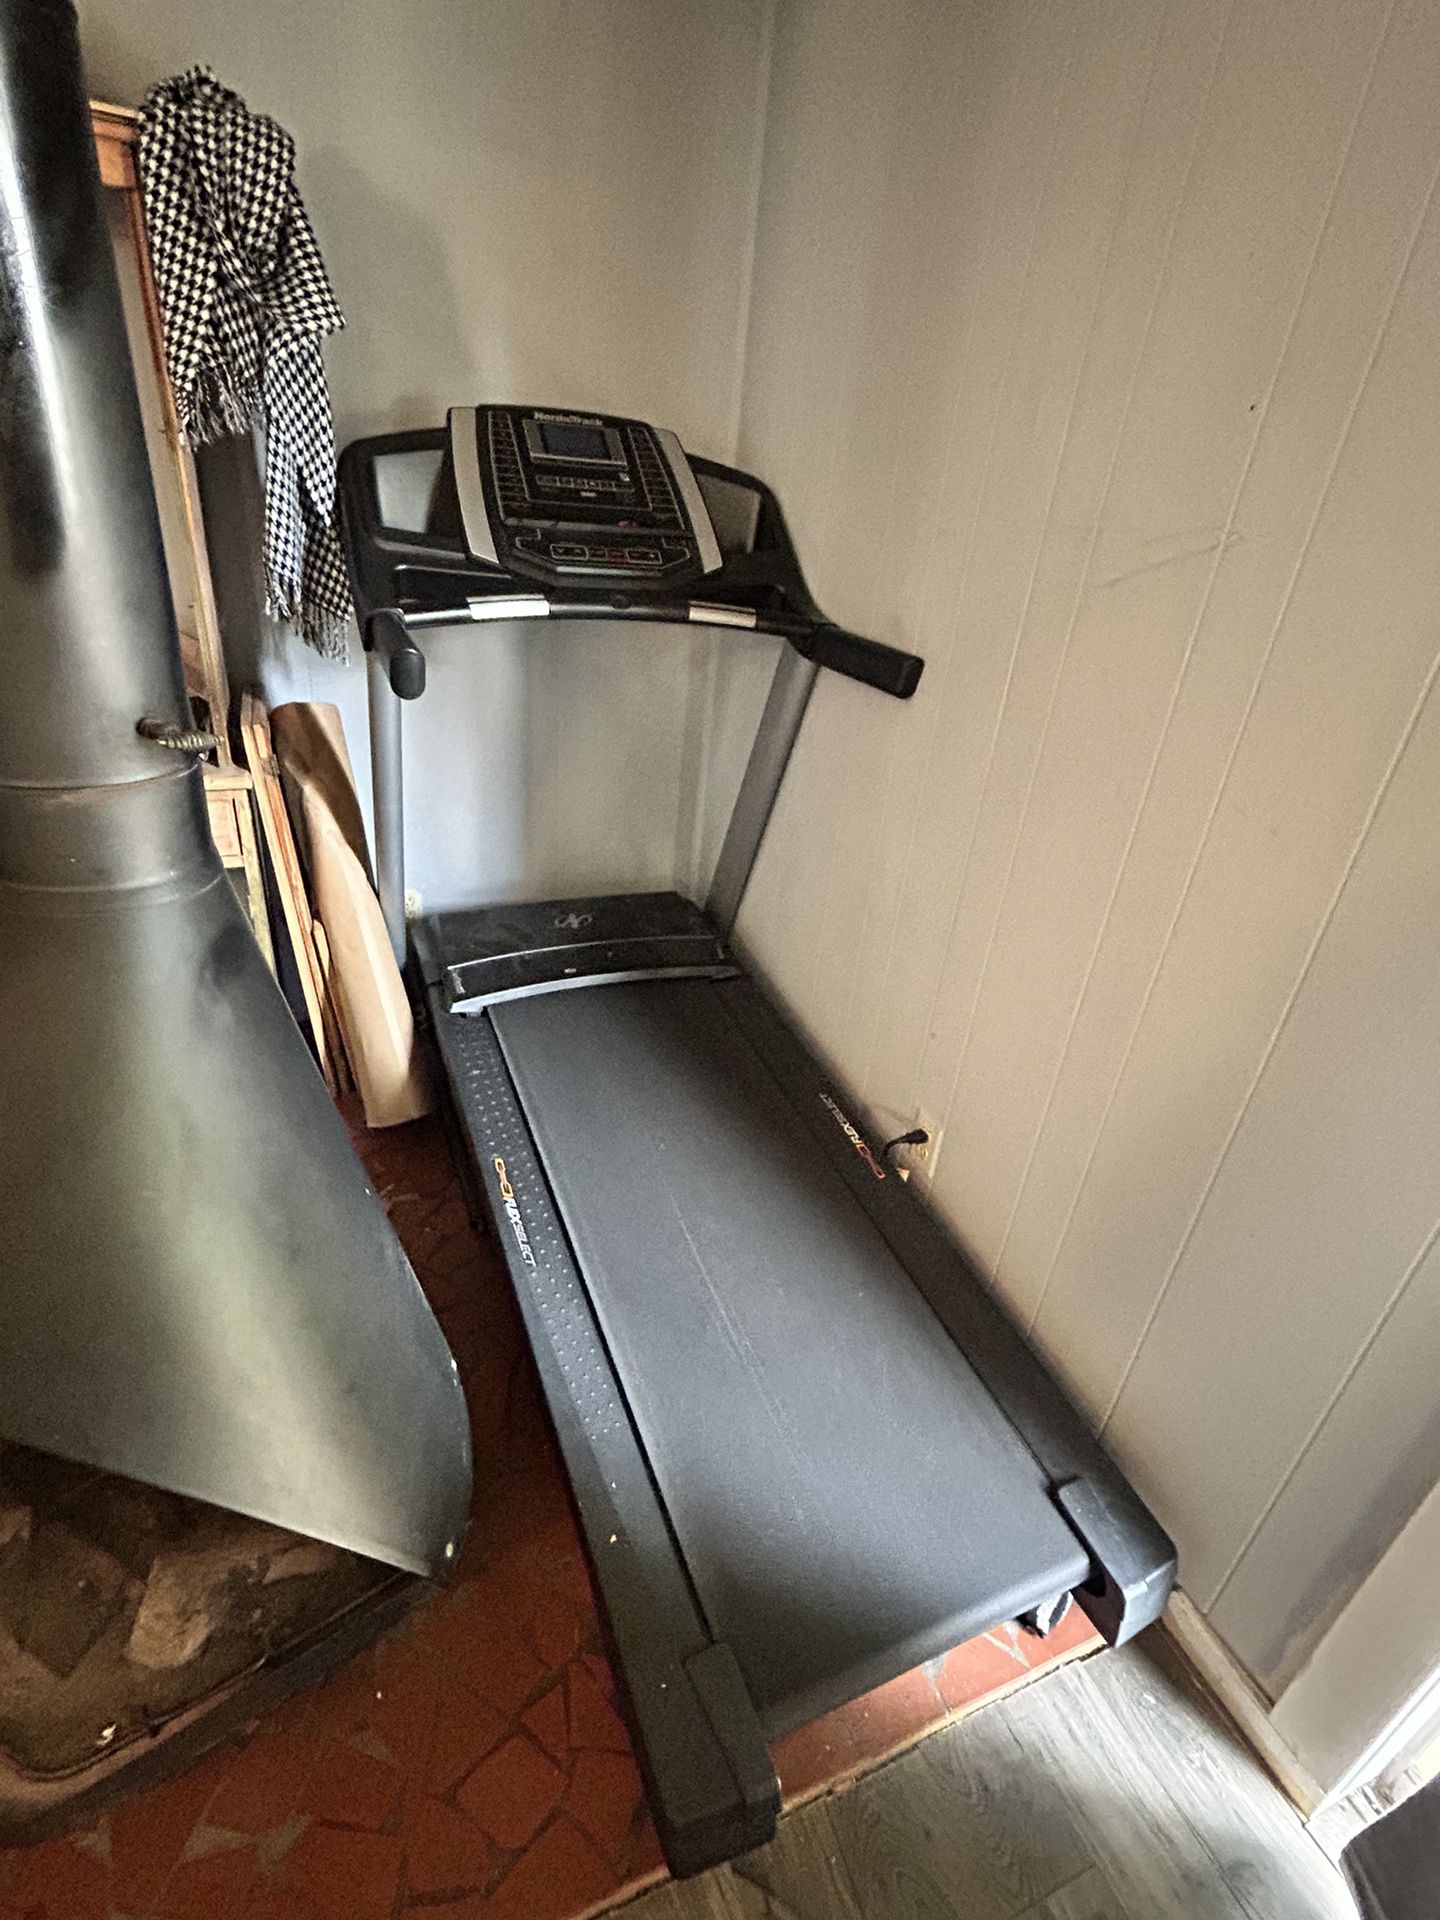 Nordic treadmill